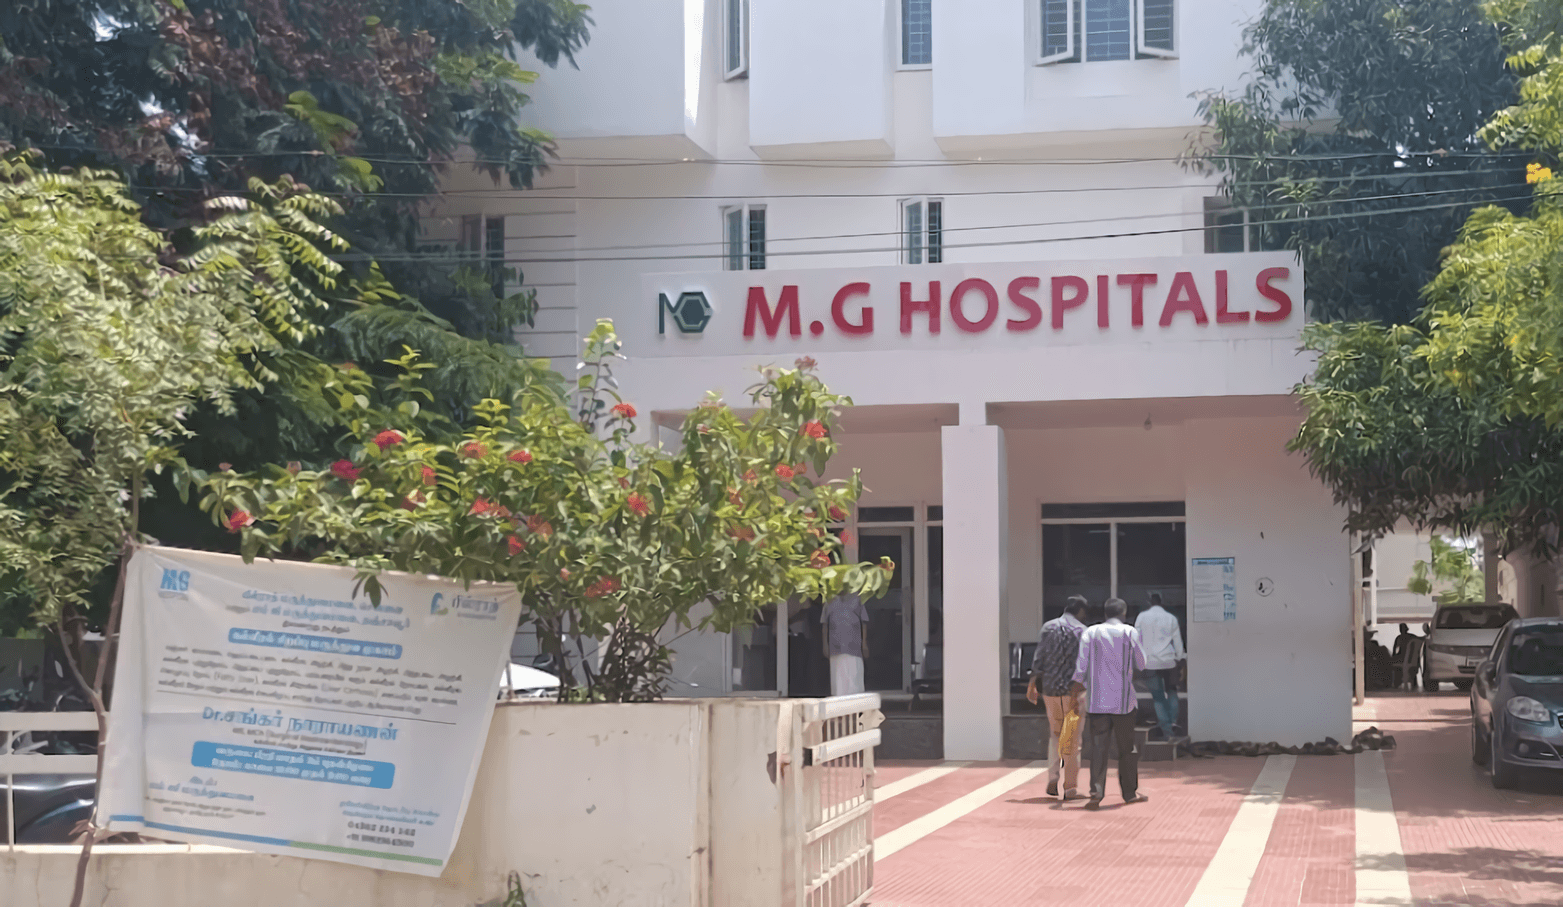 M. G. Hospitals